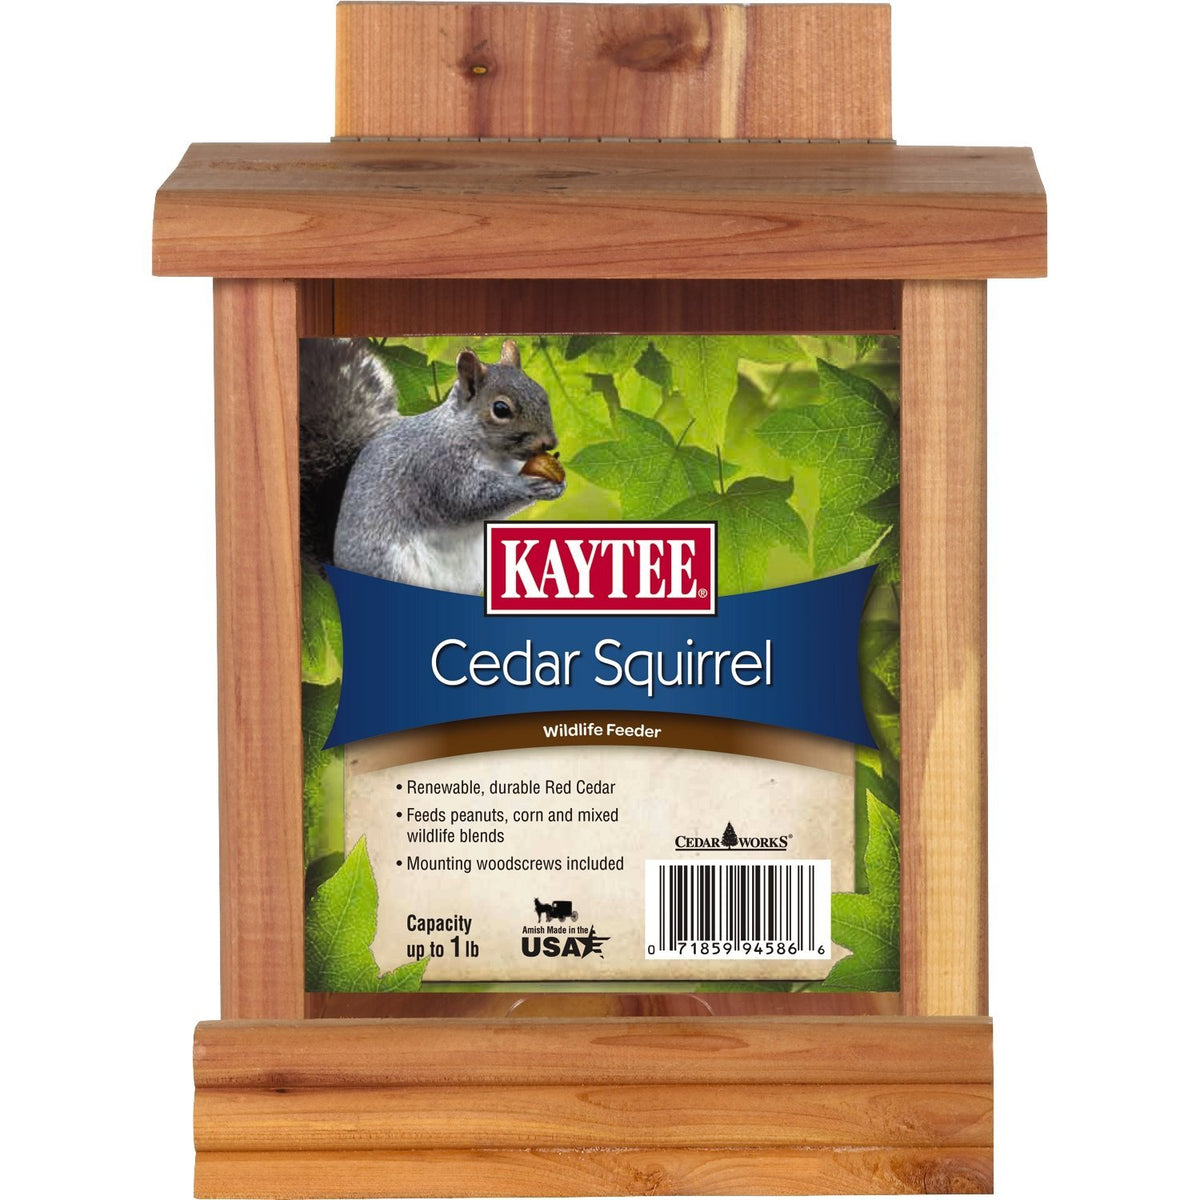 Kaytee 100506079 Cedar Squirrel Feeder, 1 lb Capacity